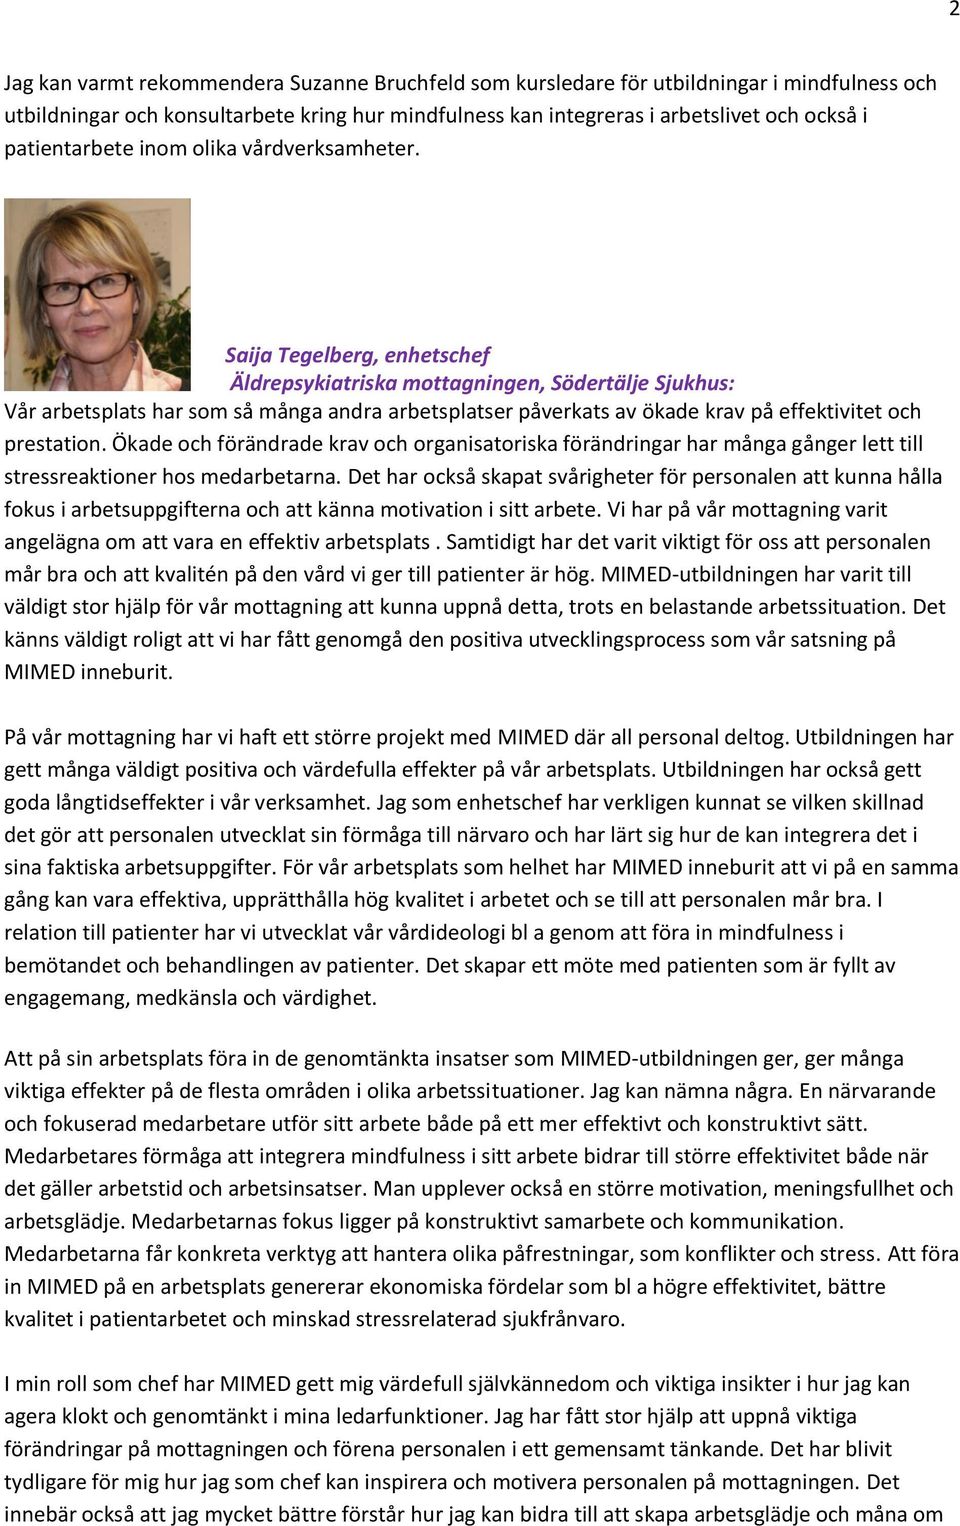 Saija Tegelberg, enhetschef Äldrepsykiatriska mottagningen, Södertälje Sjukhus: Vår arbetsplats har som så många andra arbetsplatser påverkats av ökade krav på effektivitet och prestation.